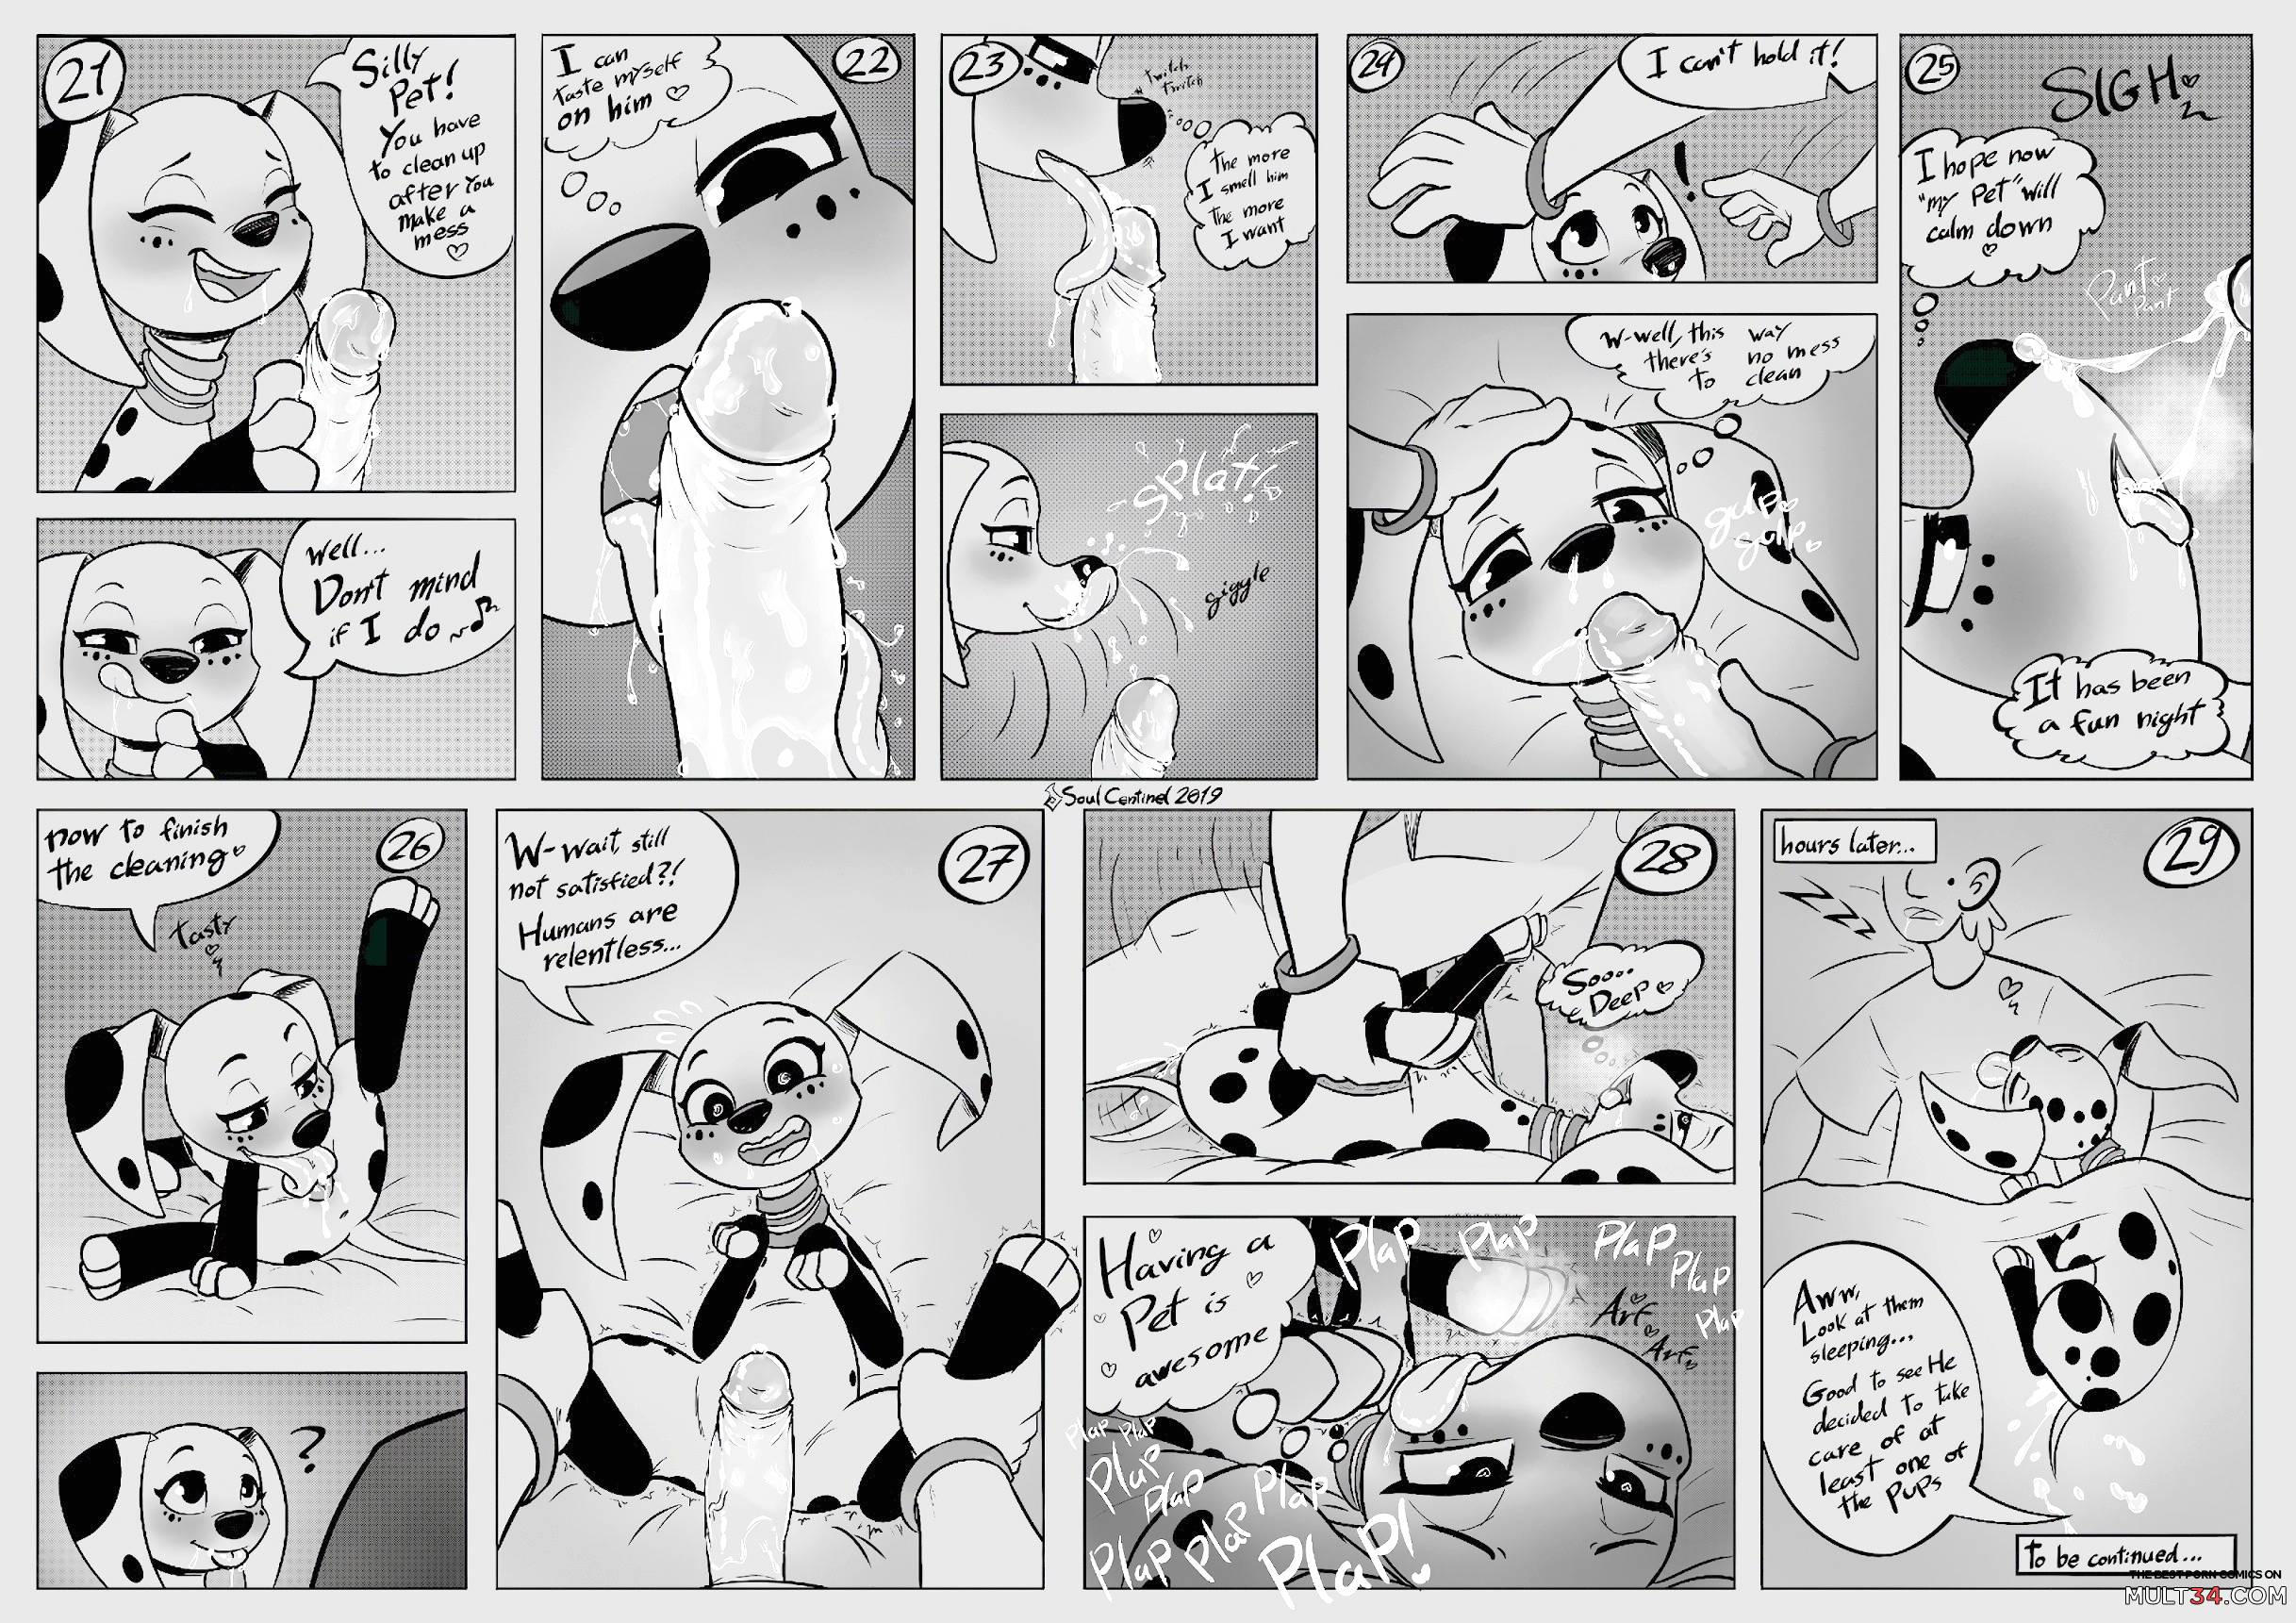 101 Dalmatians Comic Porn - 101 Dalmatian Street porn comic - the best cartoon porn comics, Rule 34 |  MULT34